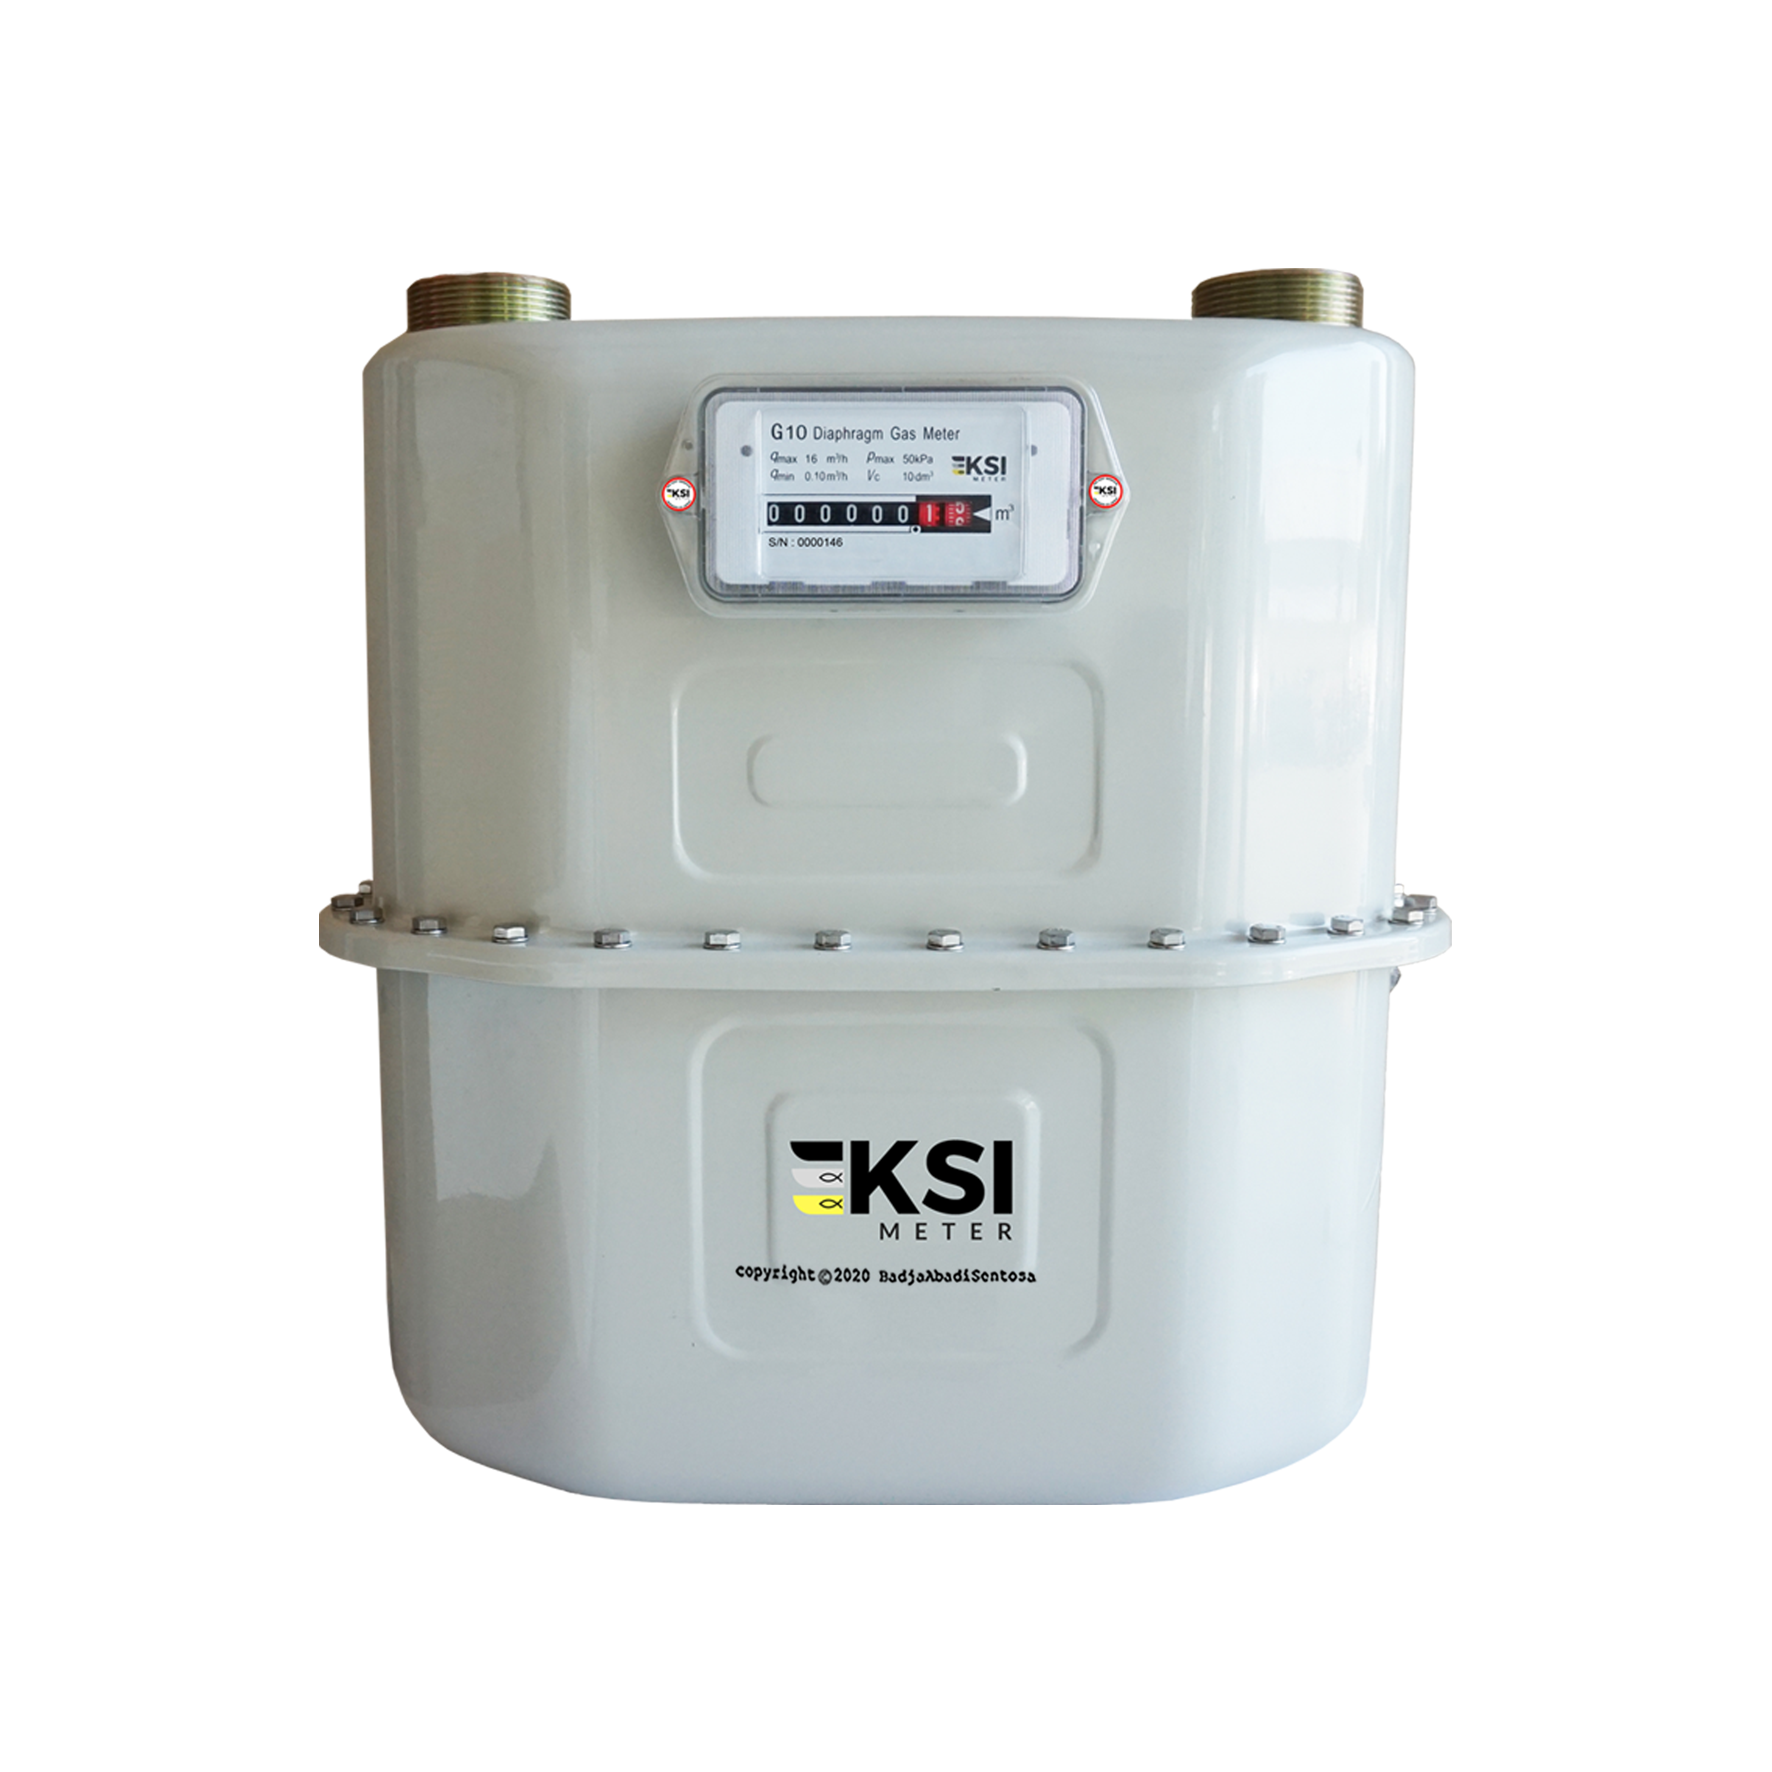 KSI - Flow Meter - Industrial Diaphragm Gas Meter